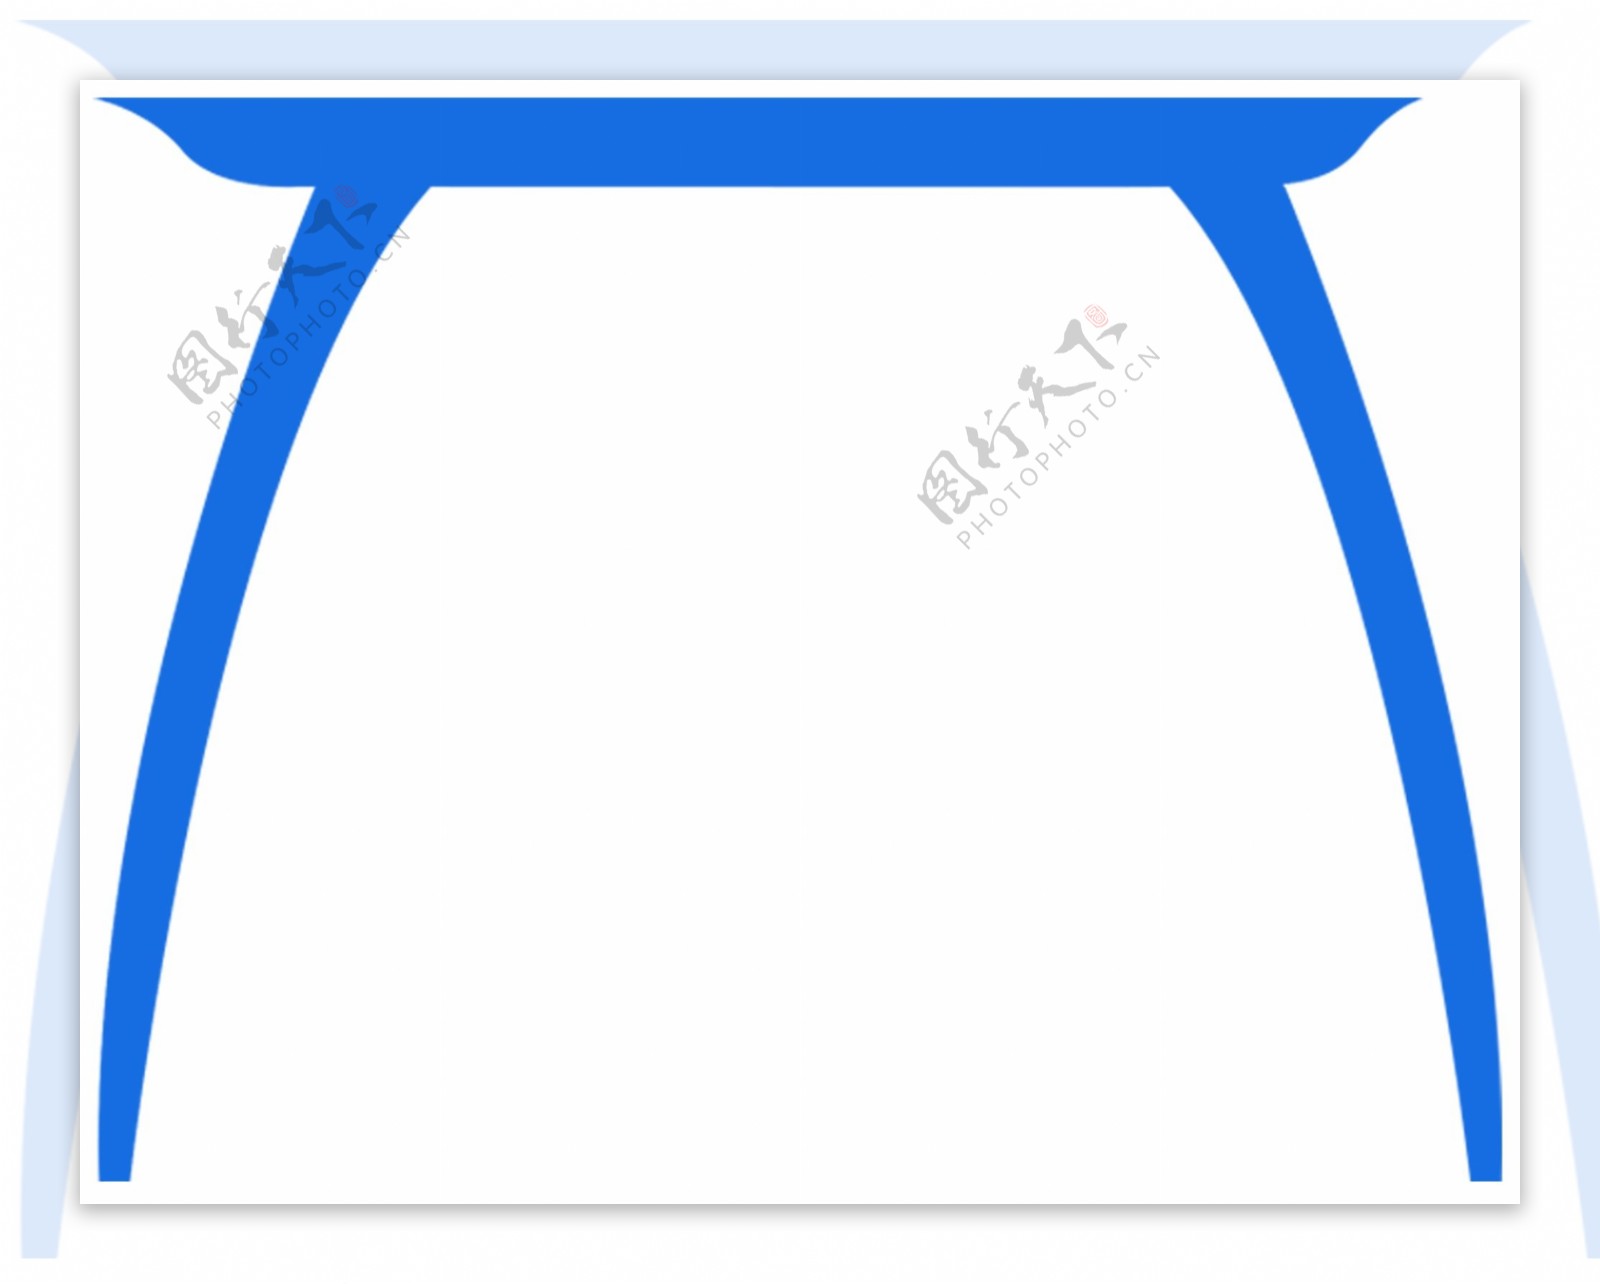 蓝色桌子图案